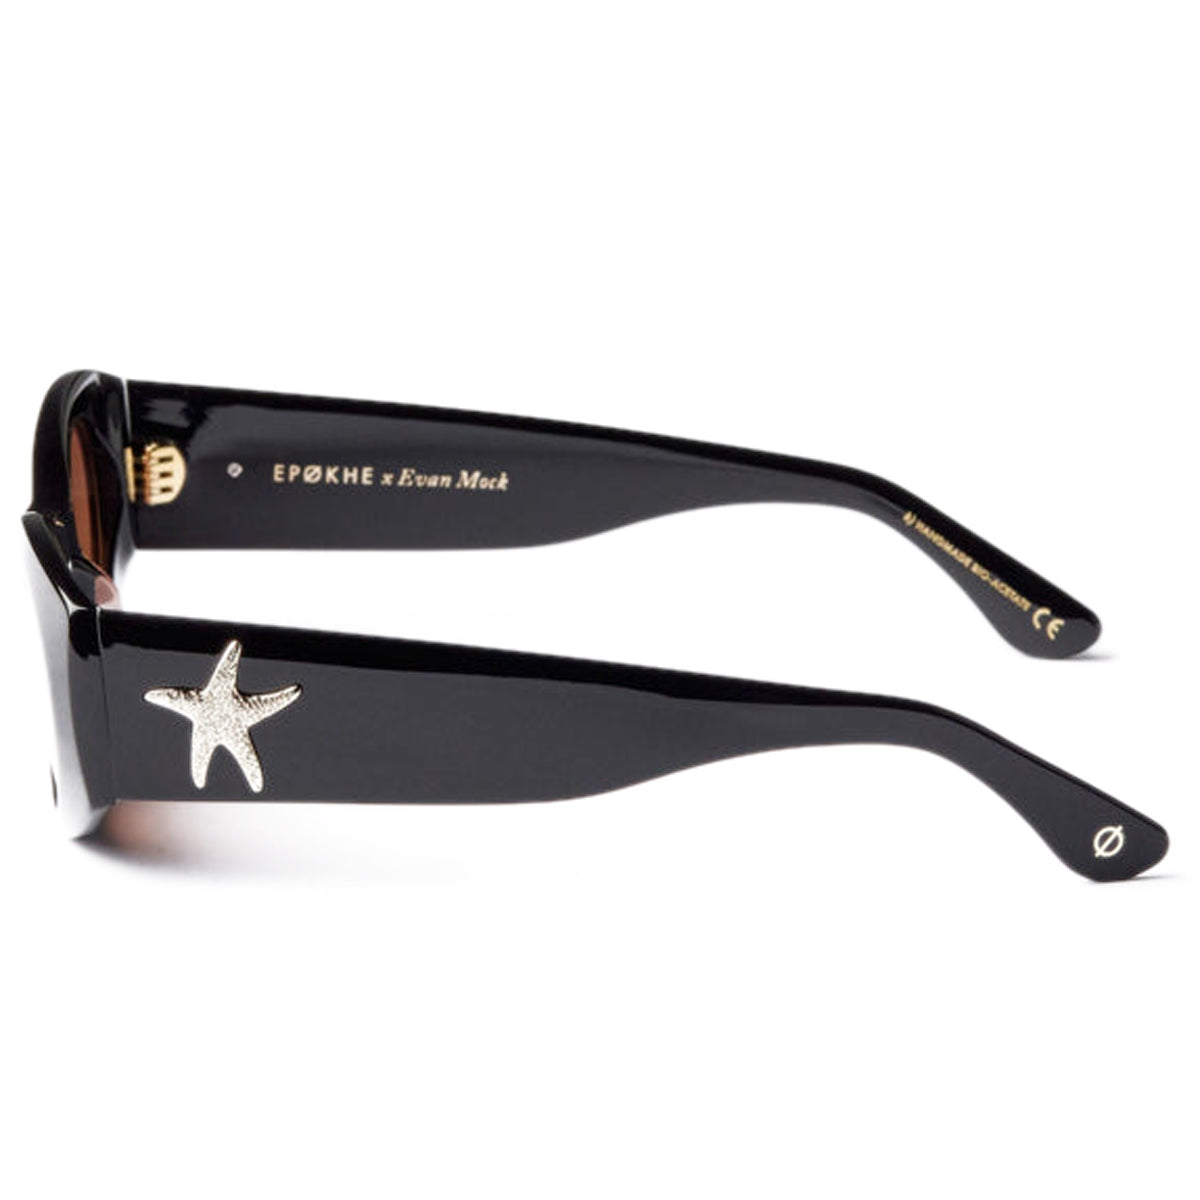 Epokhe Suede Sunglasses - Black Polished/Bronze Amber image 4